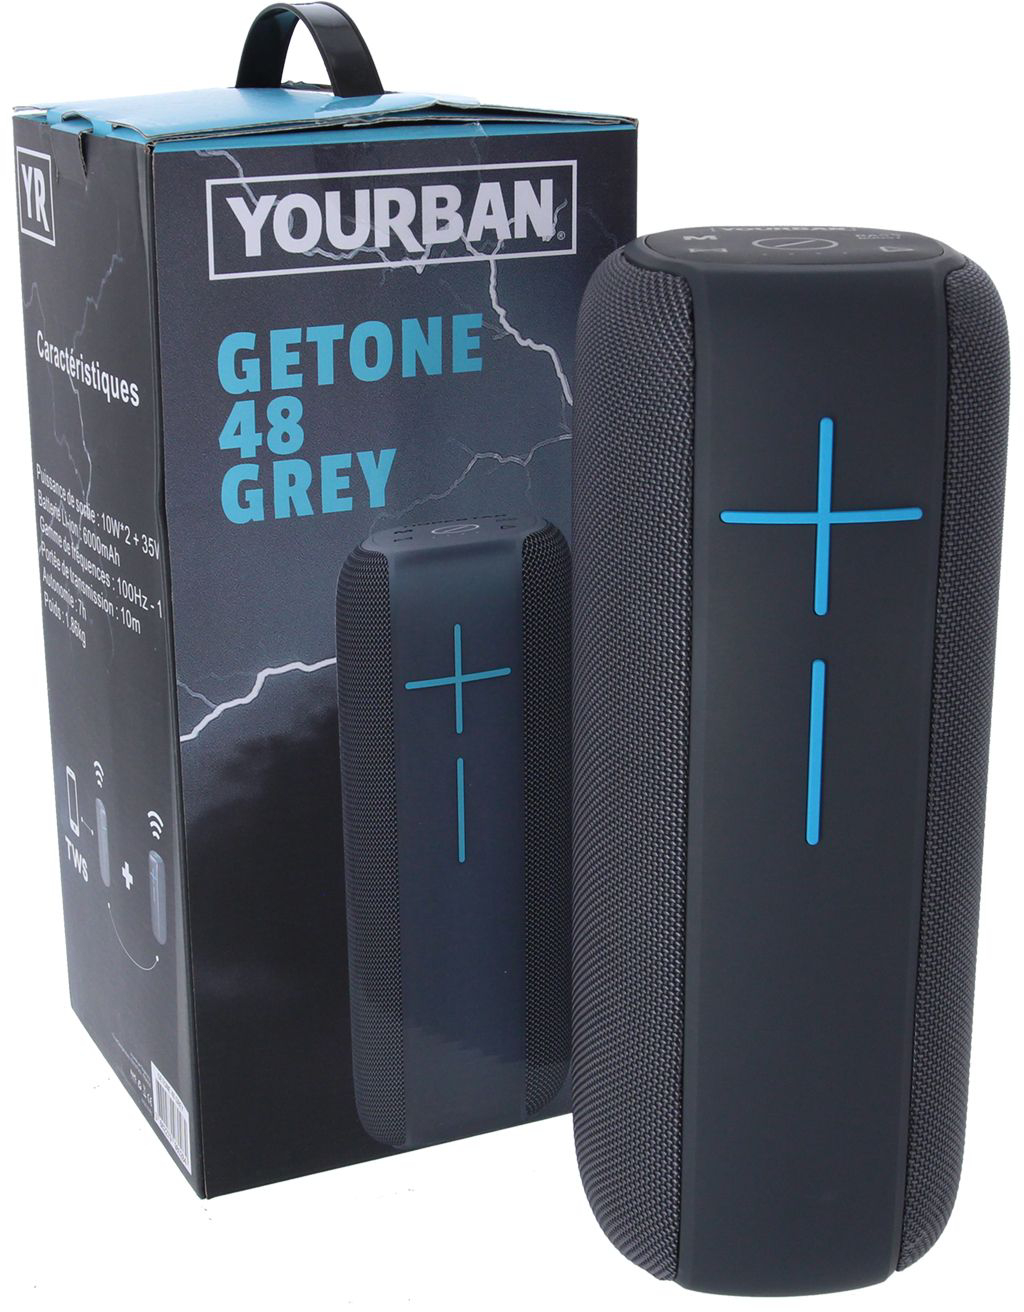 Yourban Getone 48 Grey - Sistema de sonorización portátil - Variation 5